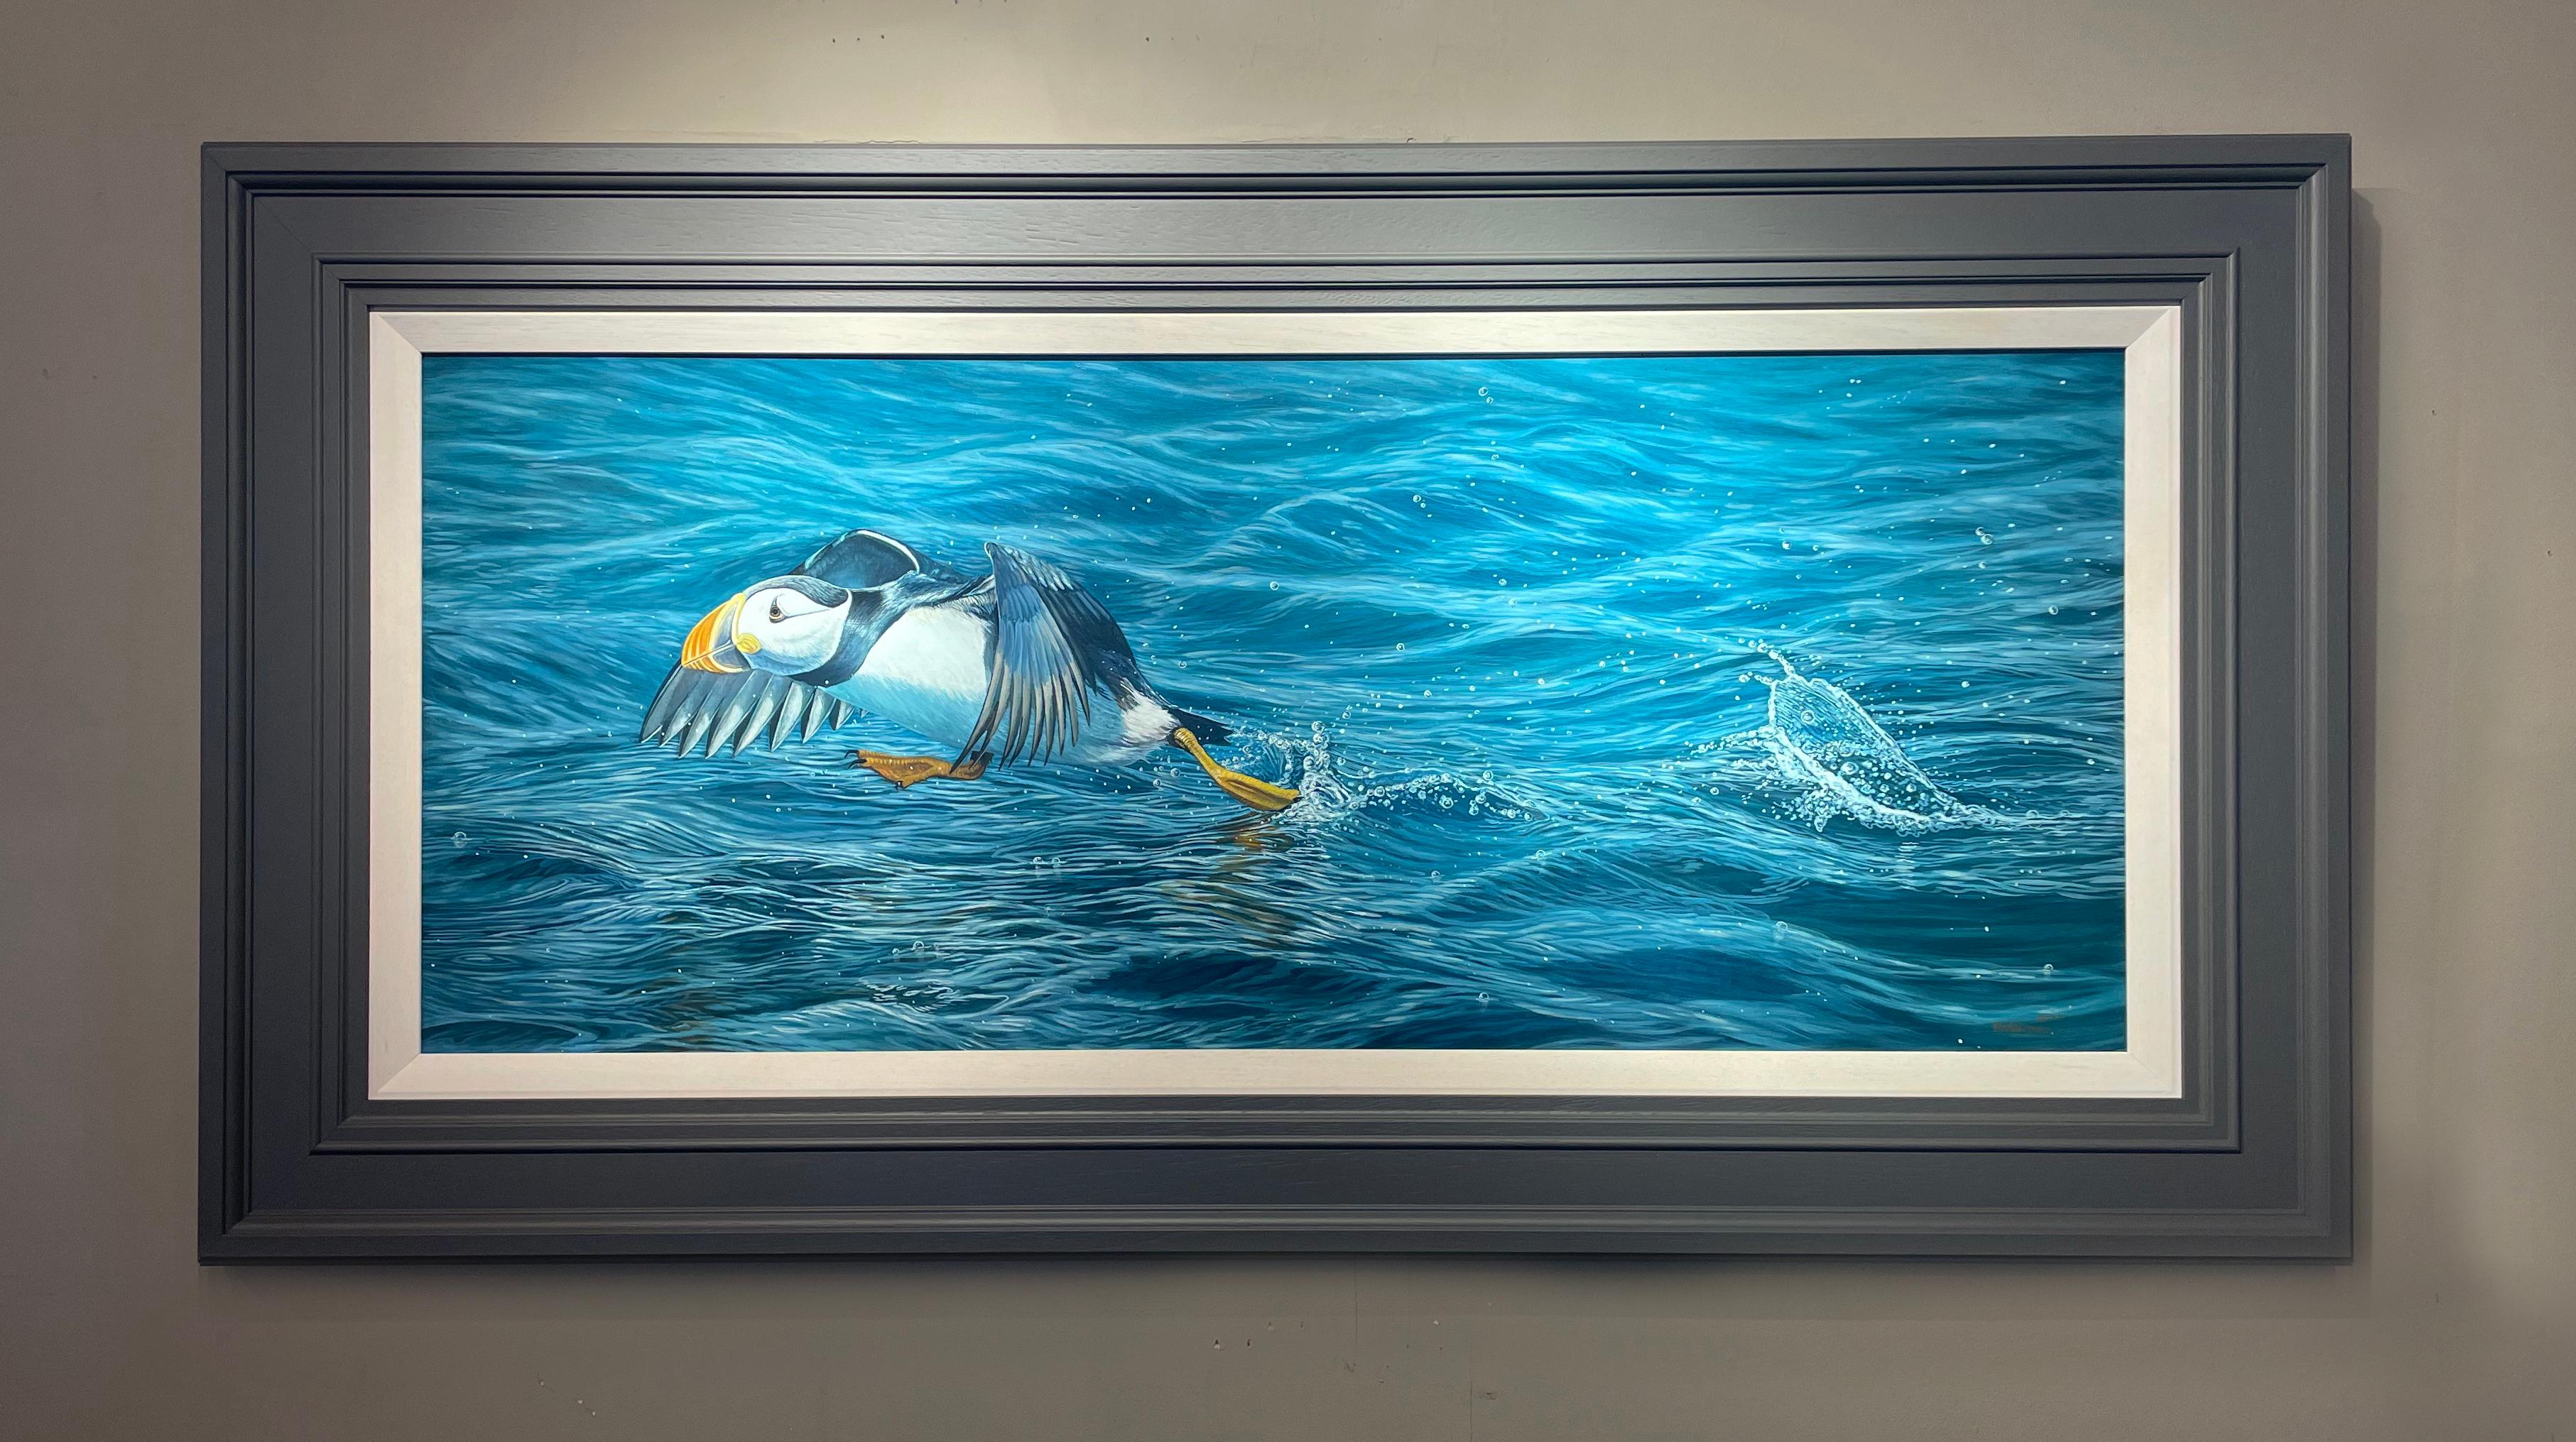 Fotorealistisches Wildtiergemälde „Leap of Faith“ eines Puffins auf leuchtend blauem Wasser – Painting von Ben Waddams